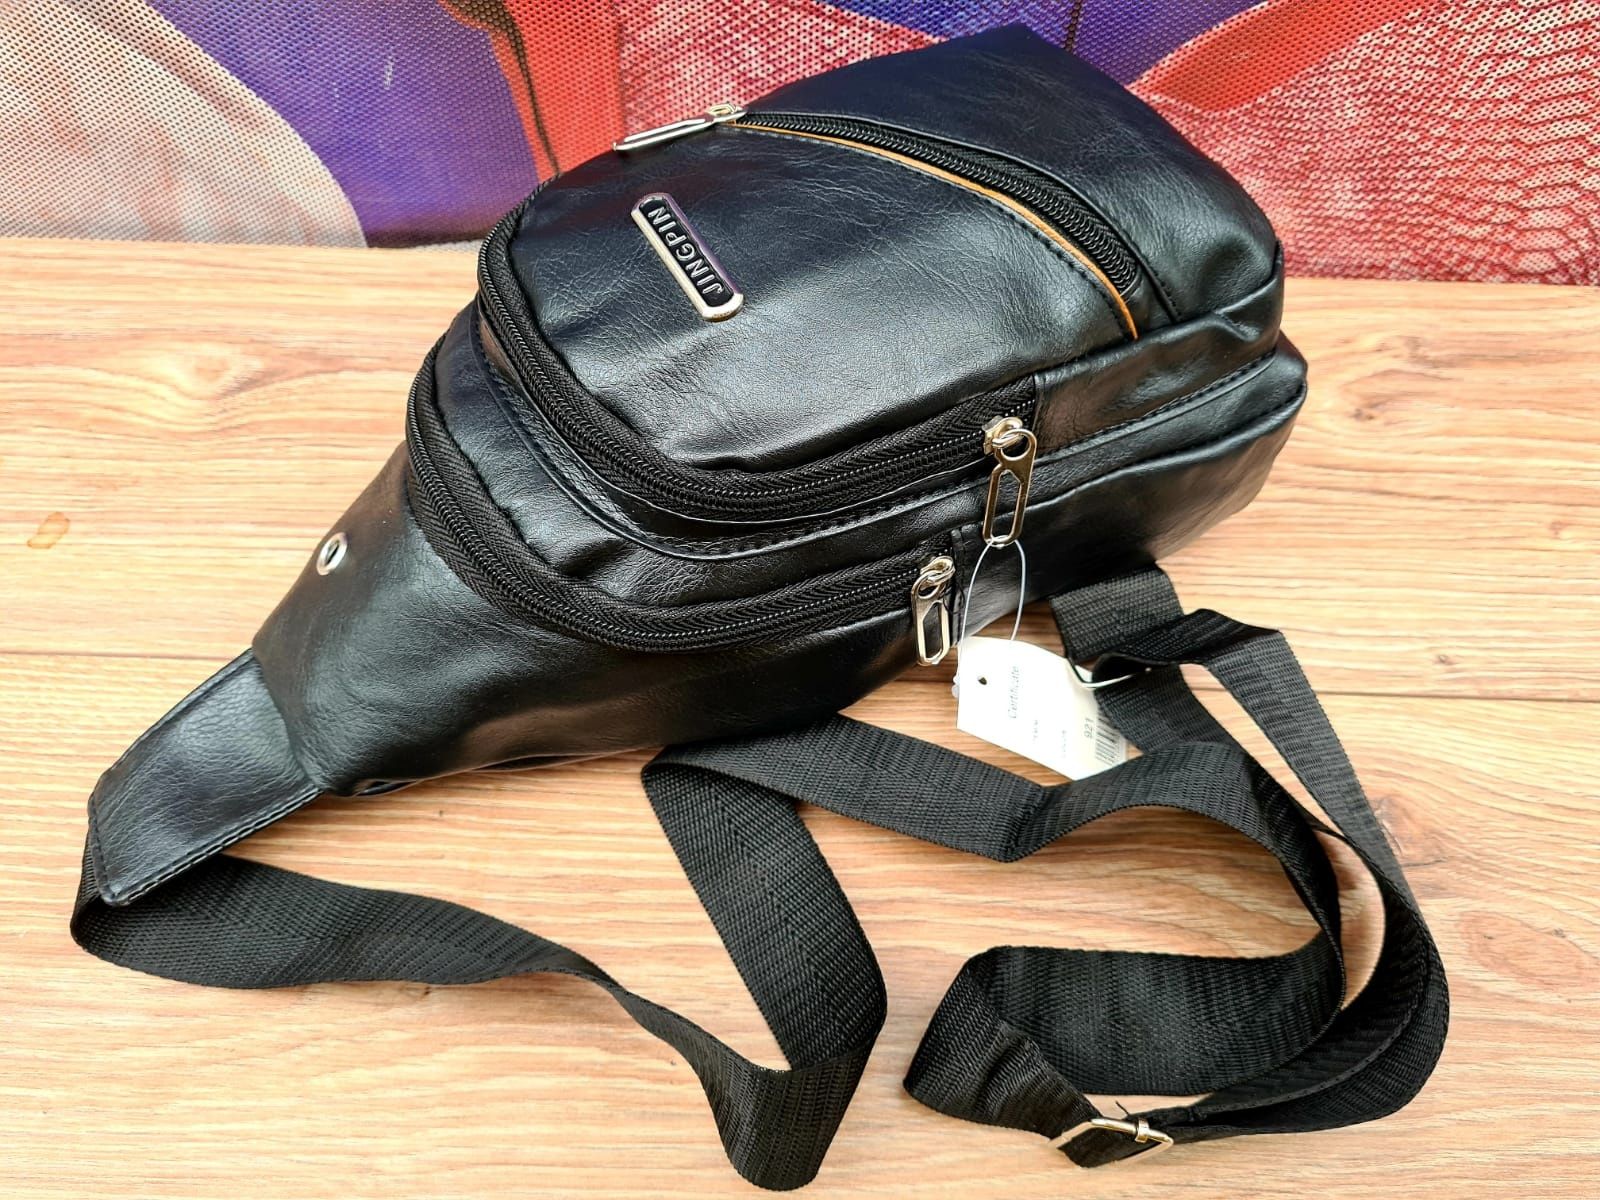 Nowy modny plecak na jedno ramię w kolorze czarnym